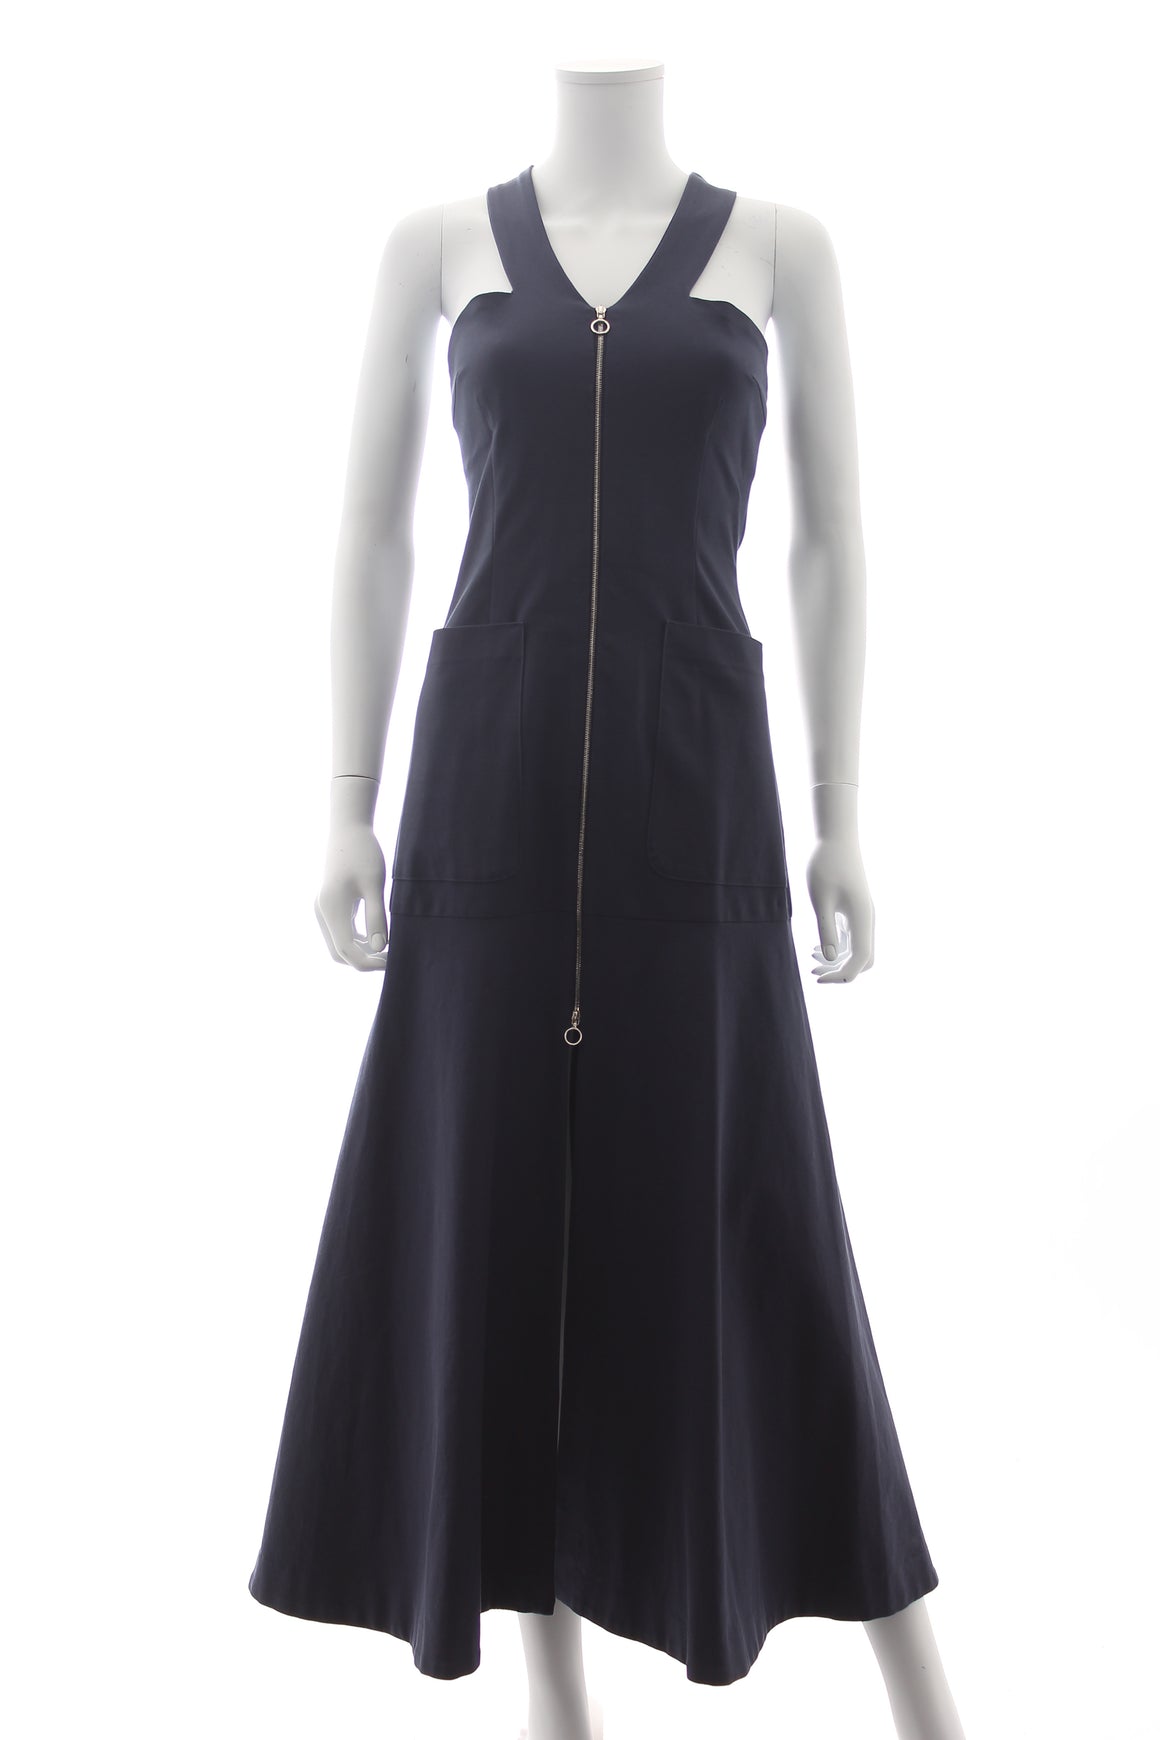 Isa Arfen Zip-Front Sleeveless Cotton Dress